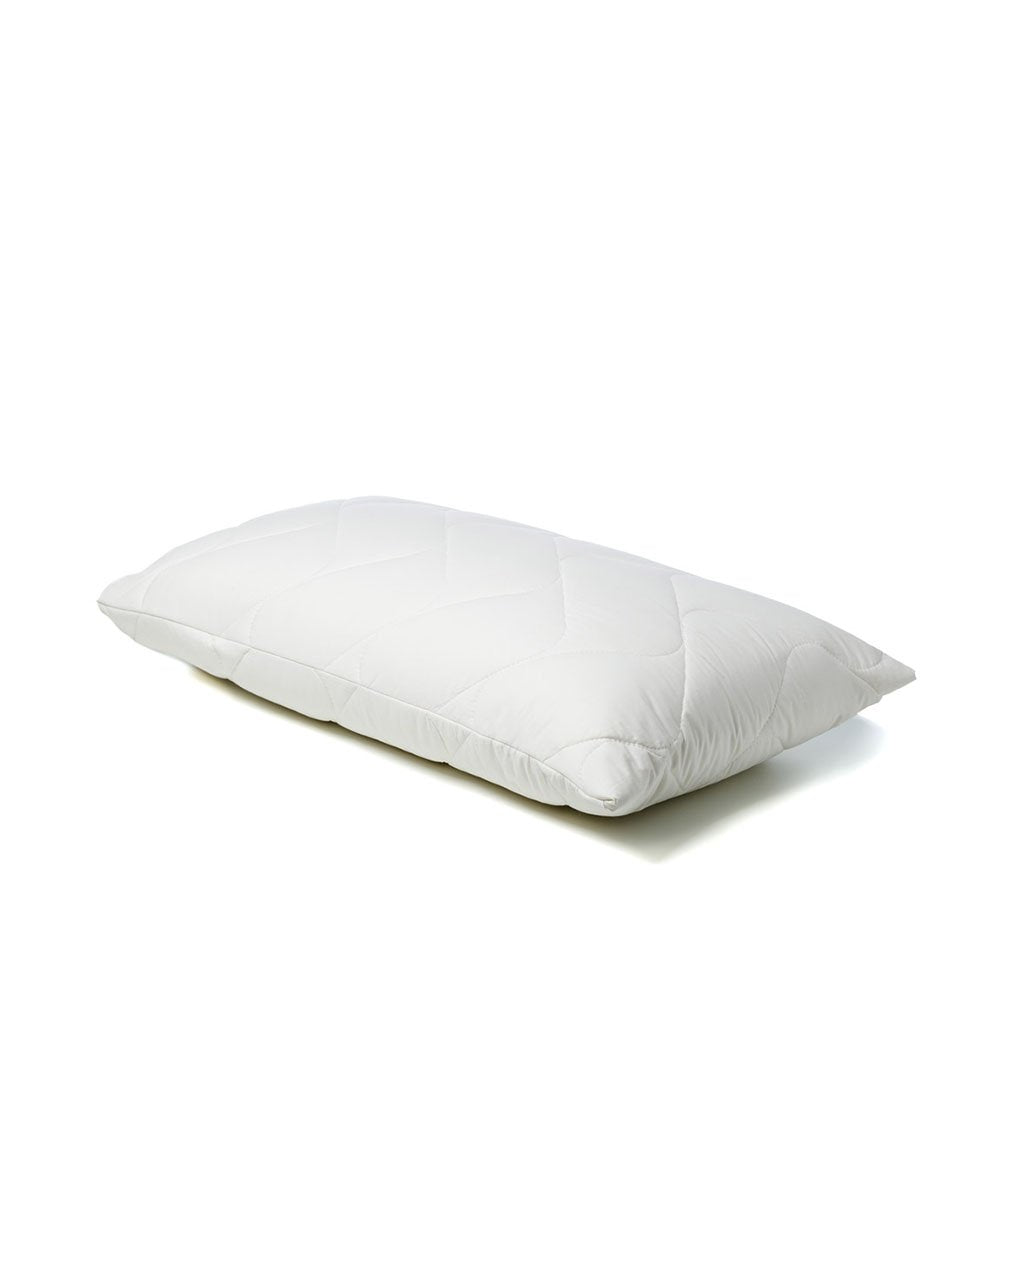 Sleep Cool Pillow protector - On Pillow